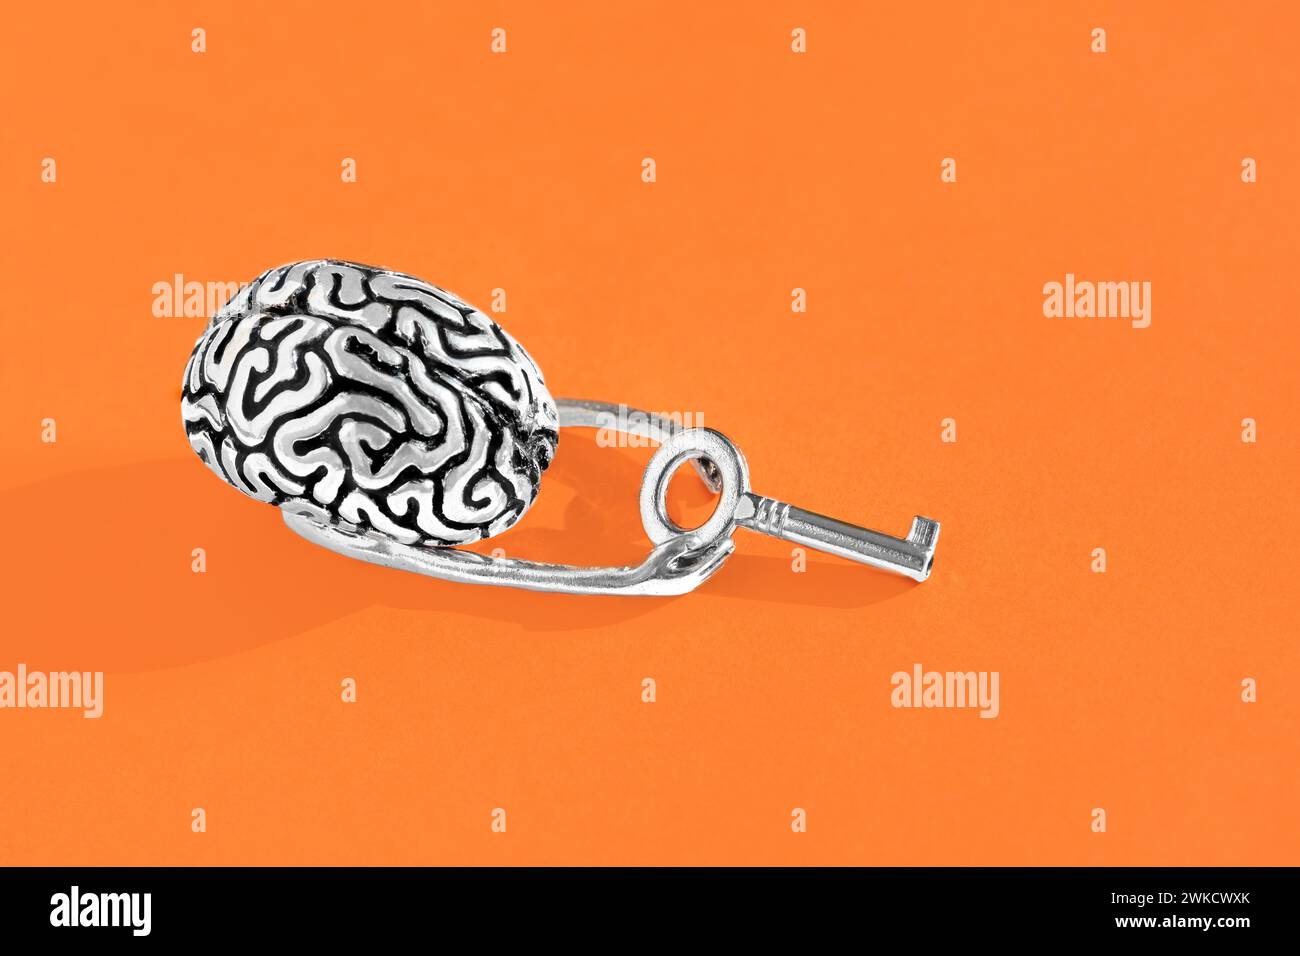 Das menschliche Gehirn hält einen Hauptschlüssel in den Händen vor einem orangen Hintergrund. Intellekt, Kreativität, Chancen ergreifen und potenzielles Erschließungskonzept Stockfoto